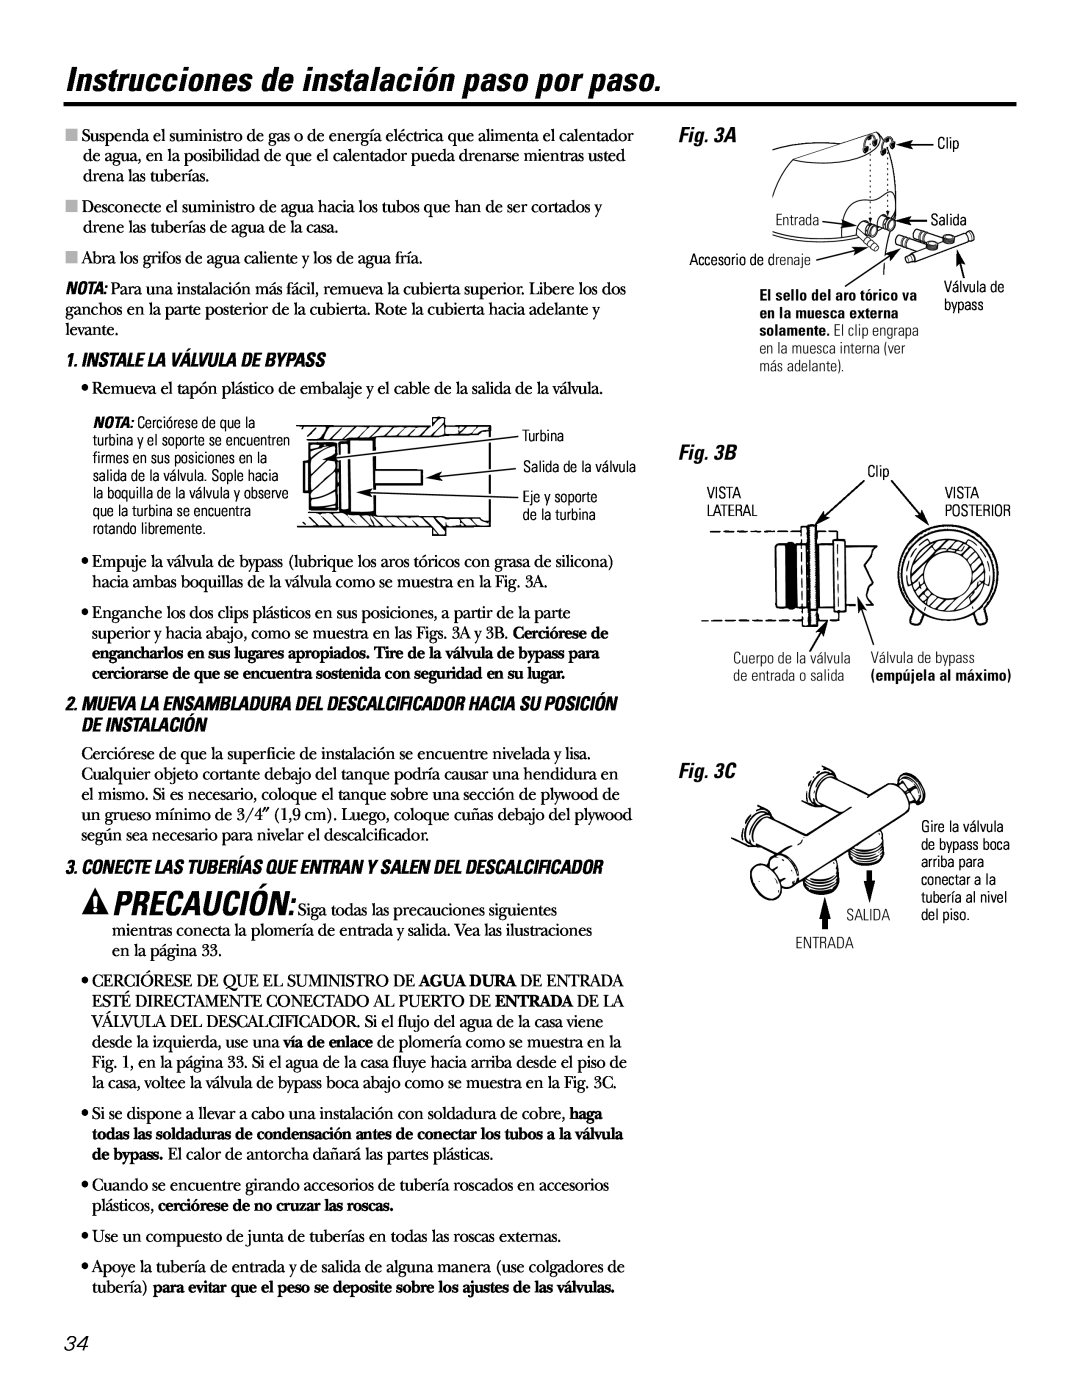 GE GXSF31E installation instructions Instrucciones de instalación paso por paso, A, C, Instale La Válvula De Bypass 